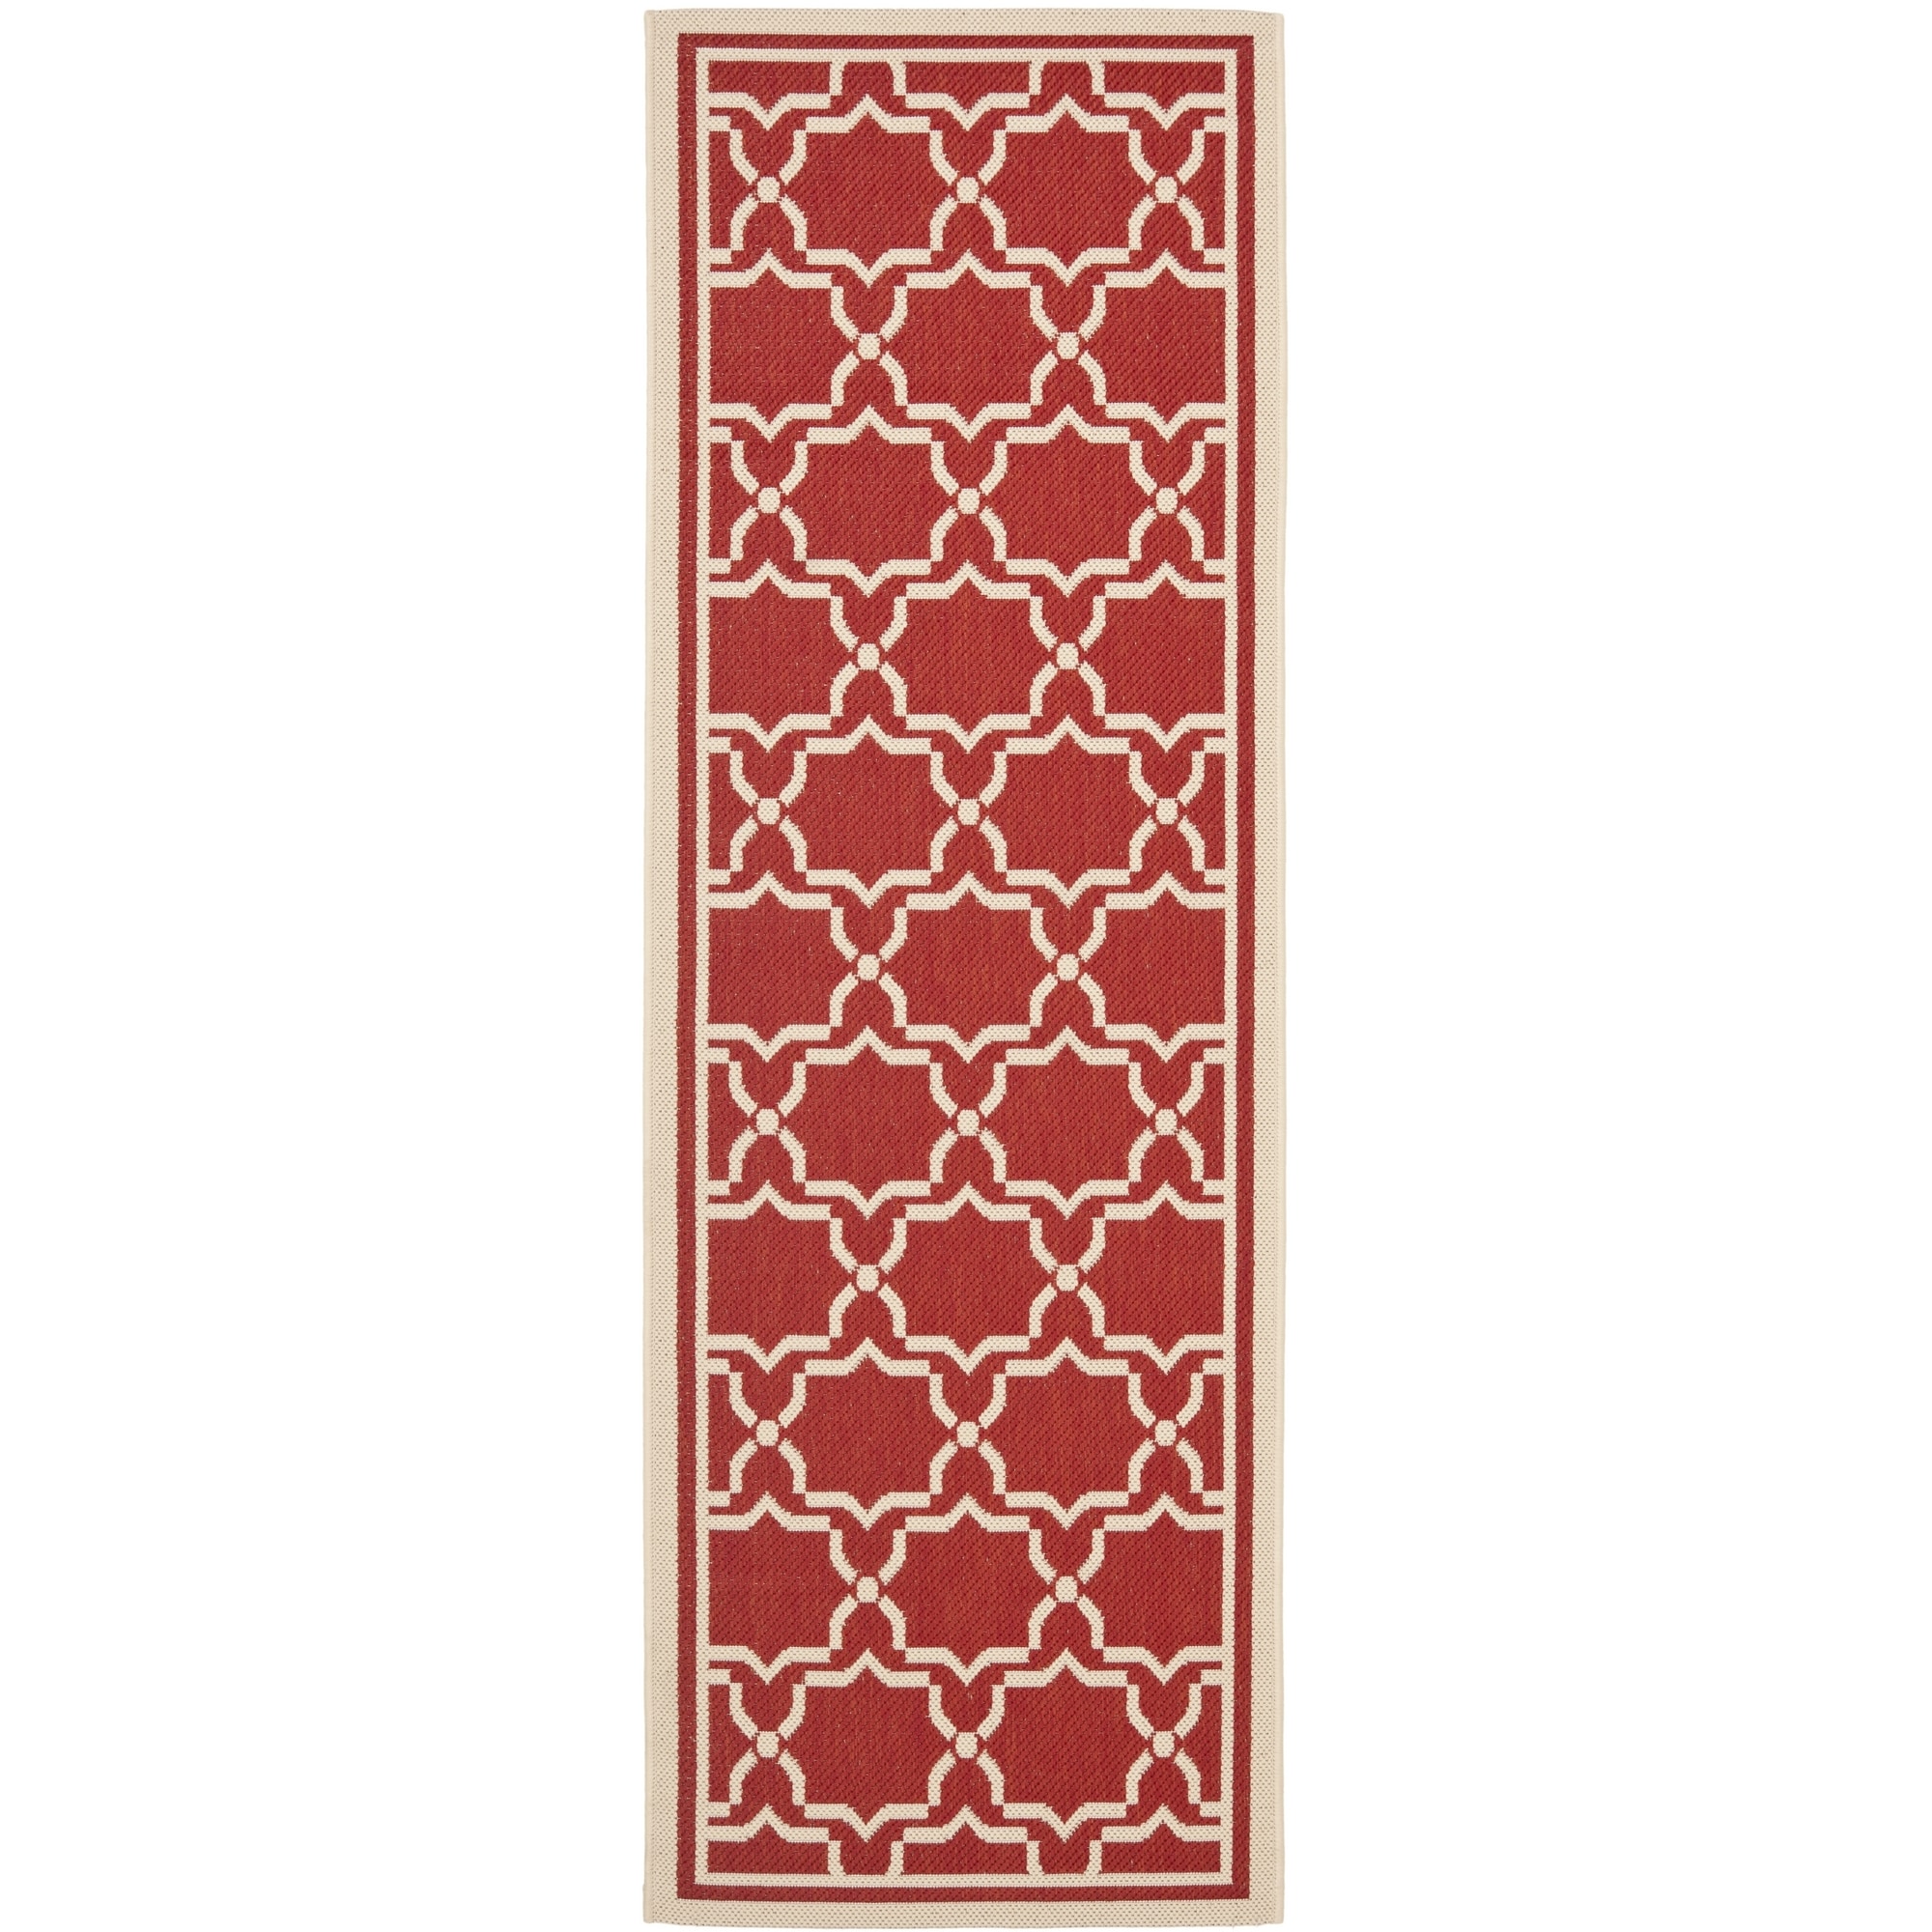 Safavieh Indoor/ Outdoor Courtyard Red/ Bone Rug (23 X 8)